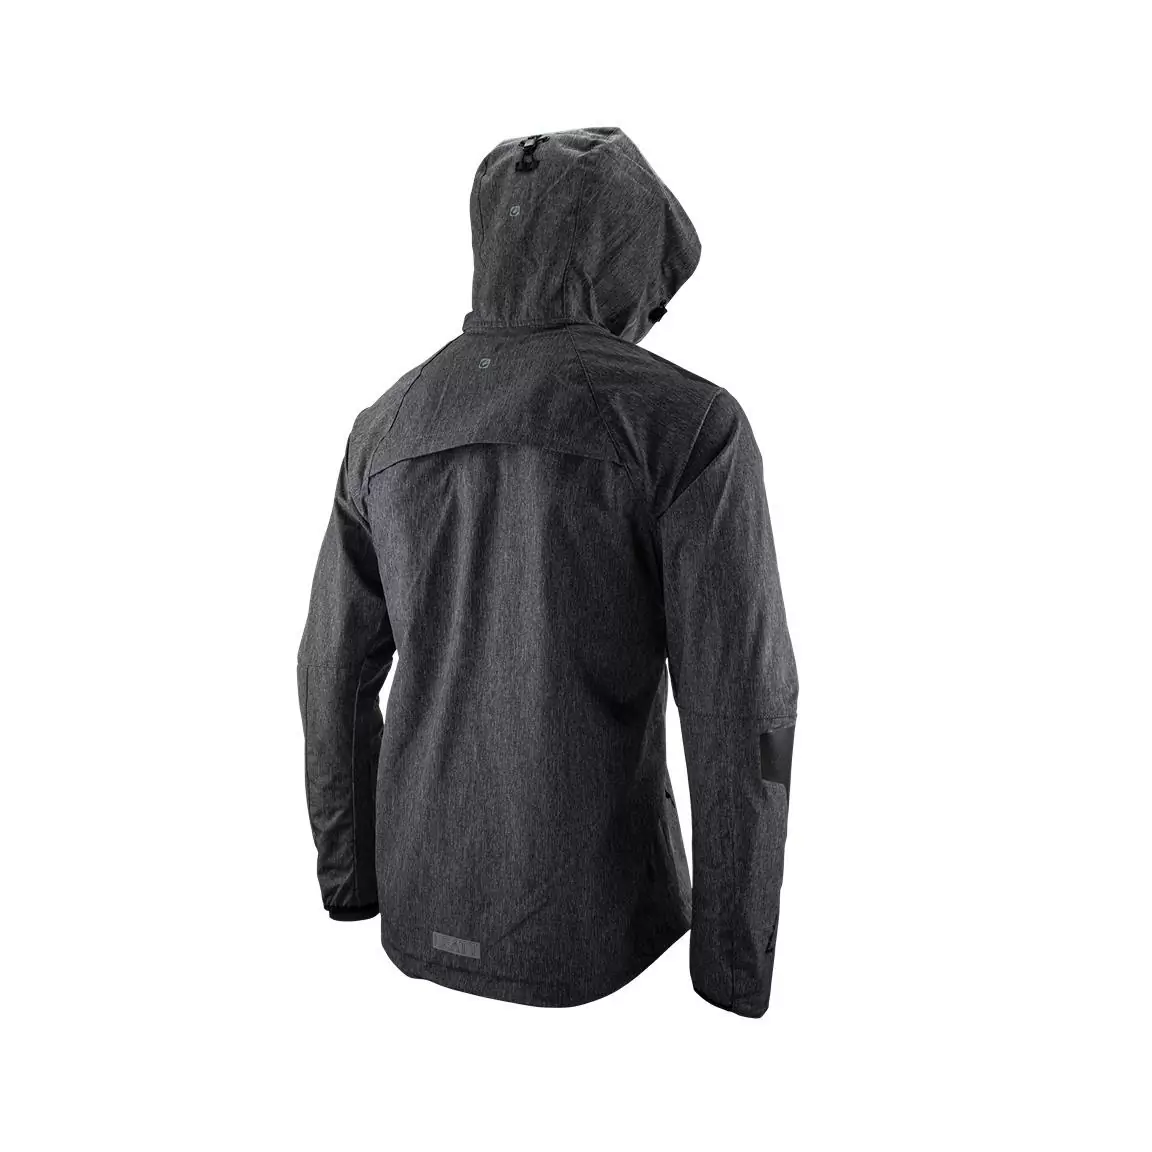 Mtb Hydradri 4.0 waterproof jacket Black size L #3